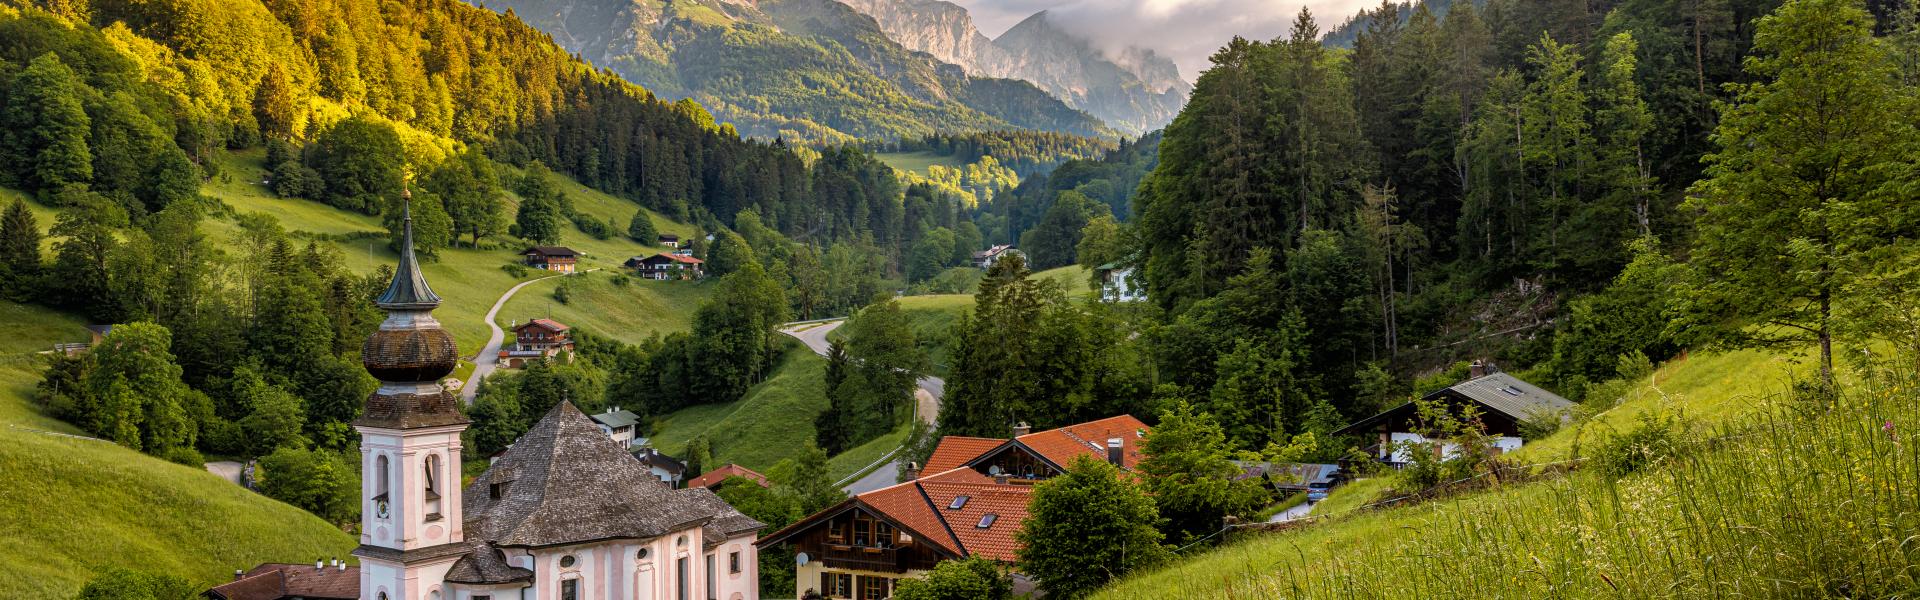 Berchtesgaden Scenic View